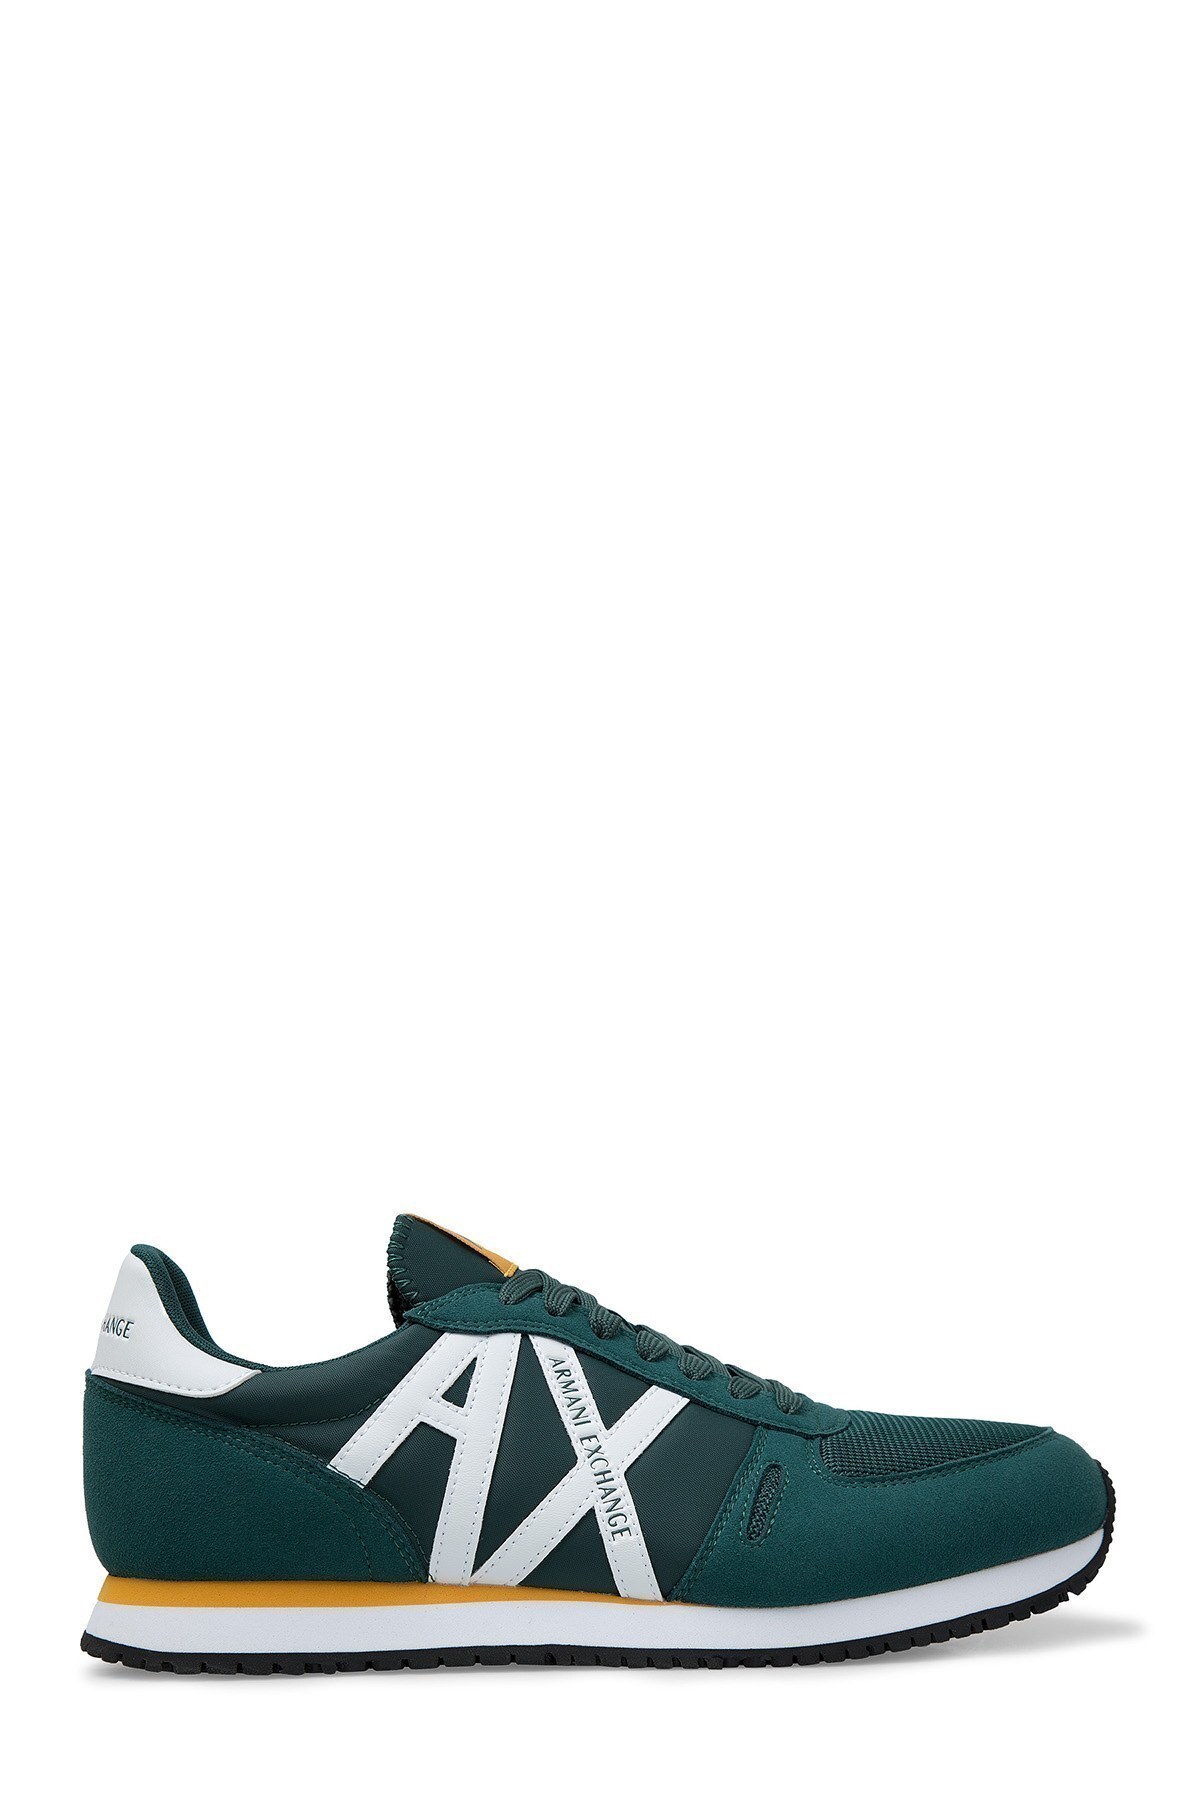 Armani Exchange Erkek Ayakkabı XUX017 XV028 A133 YEŞİL-BEYAZ